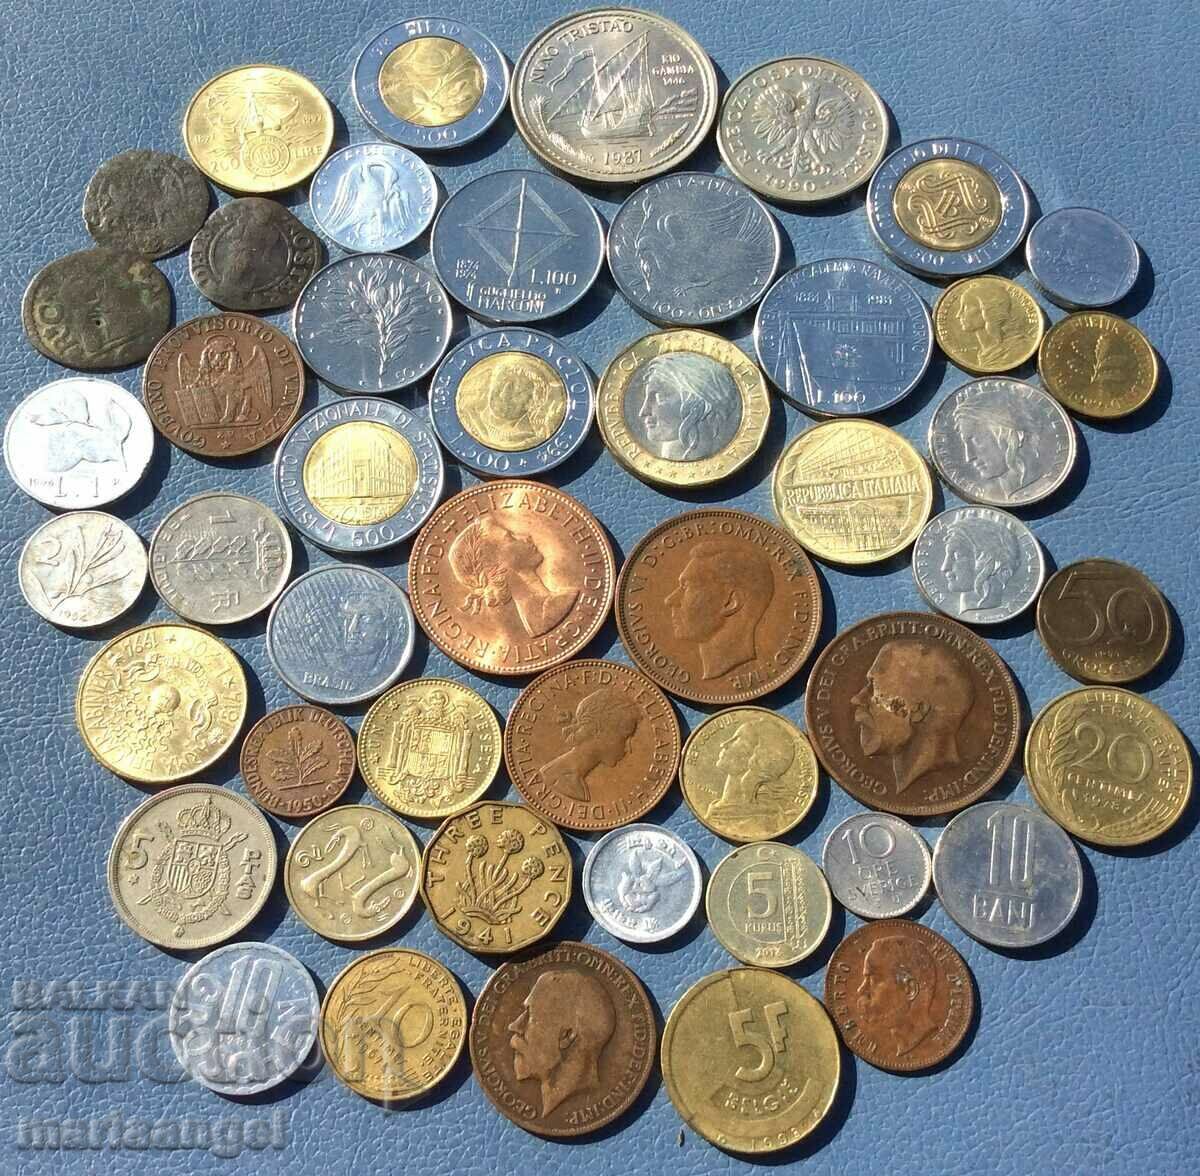 Сет от 47 монети от Италия, Англия, Ватикан и други 3